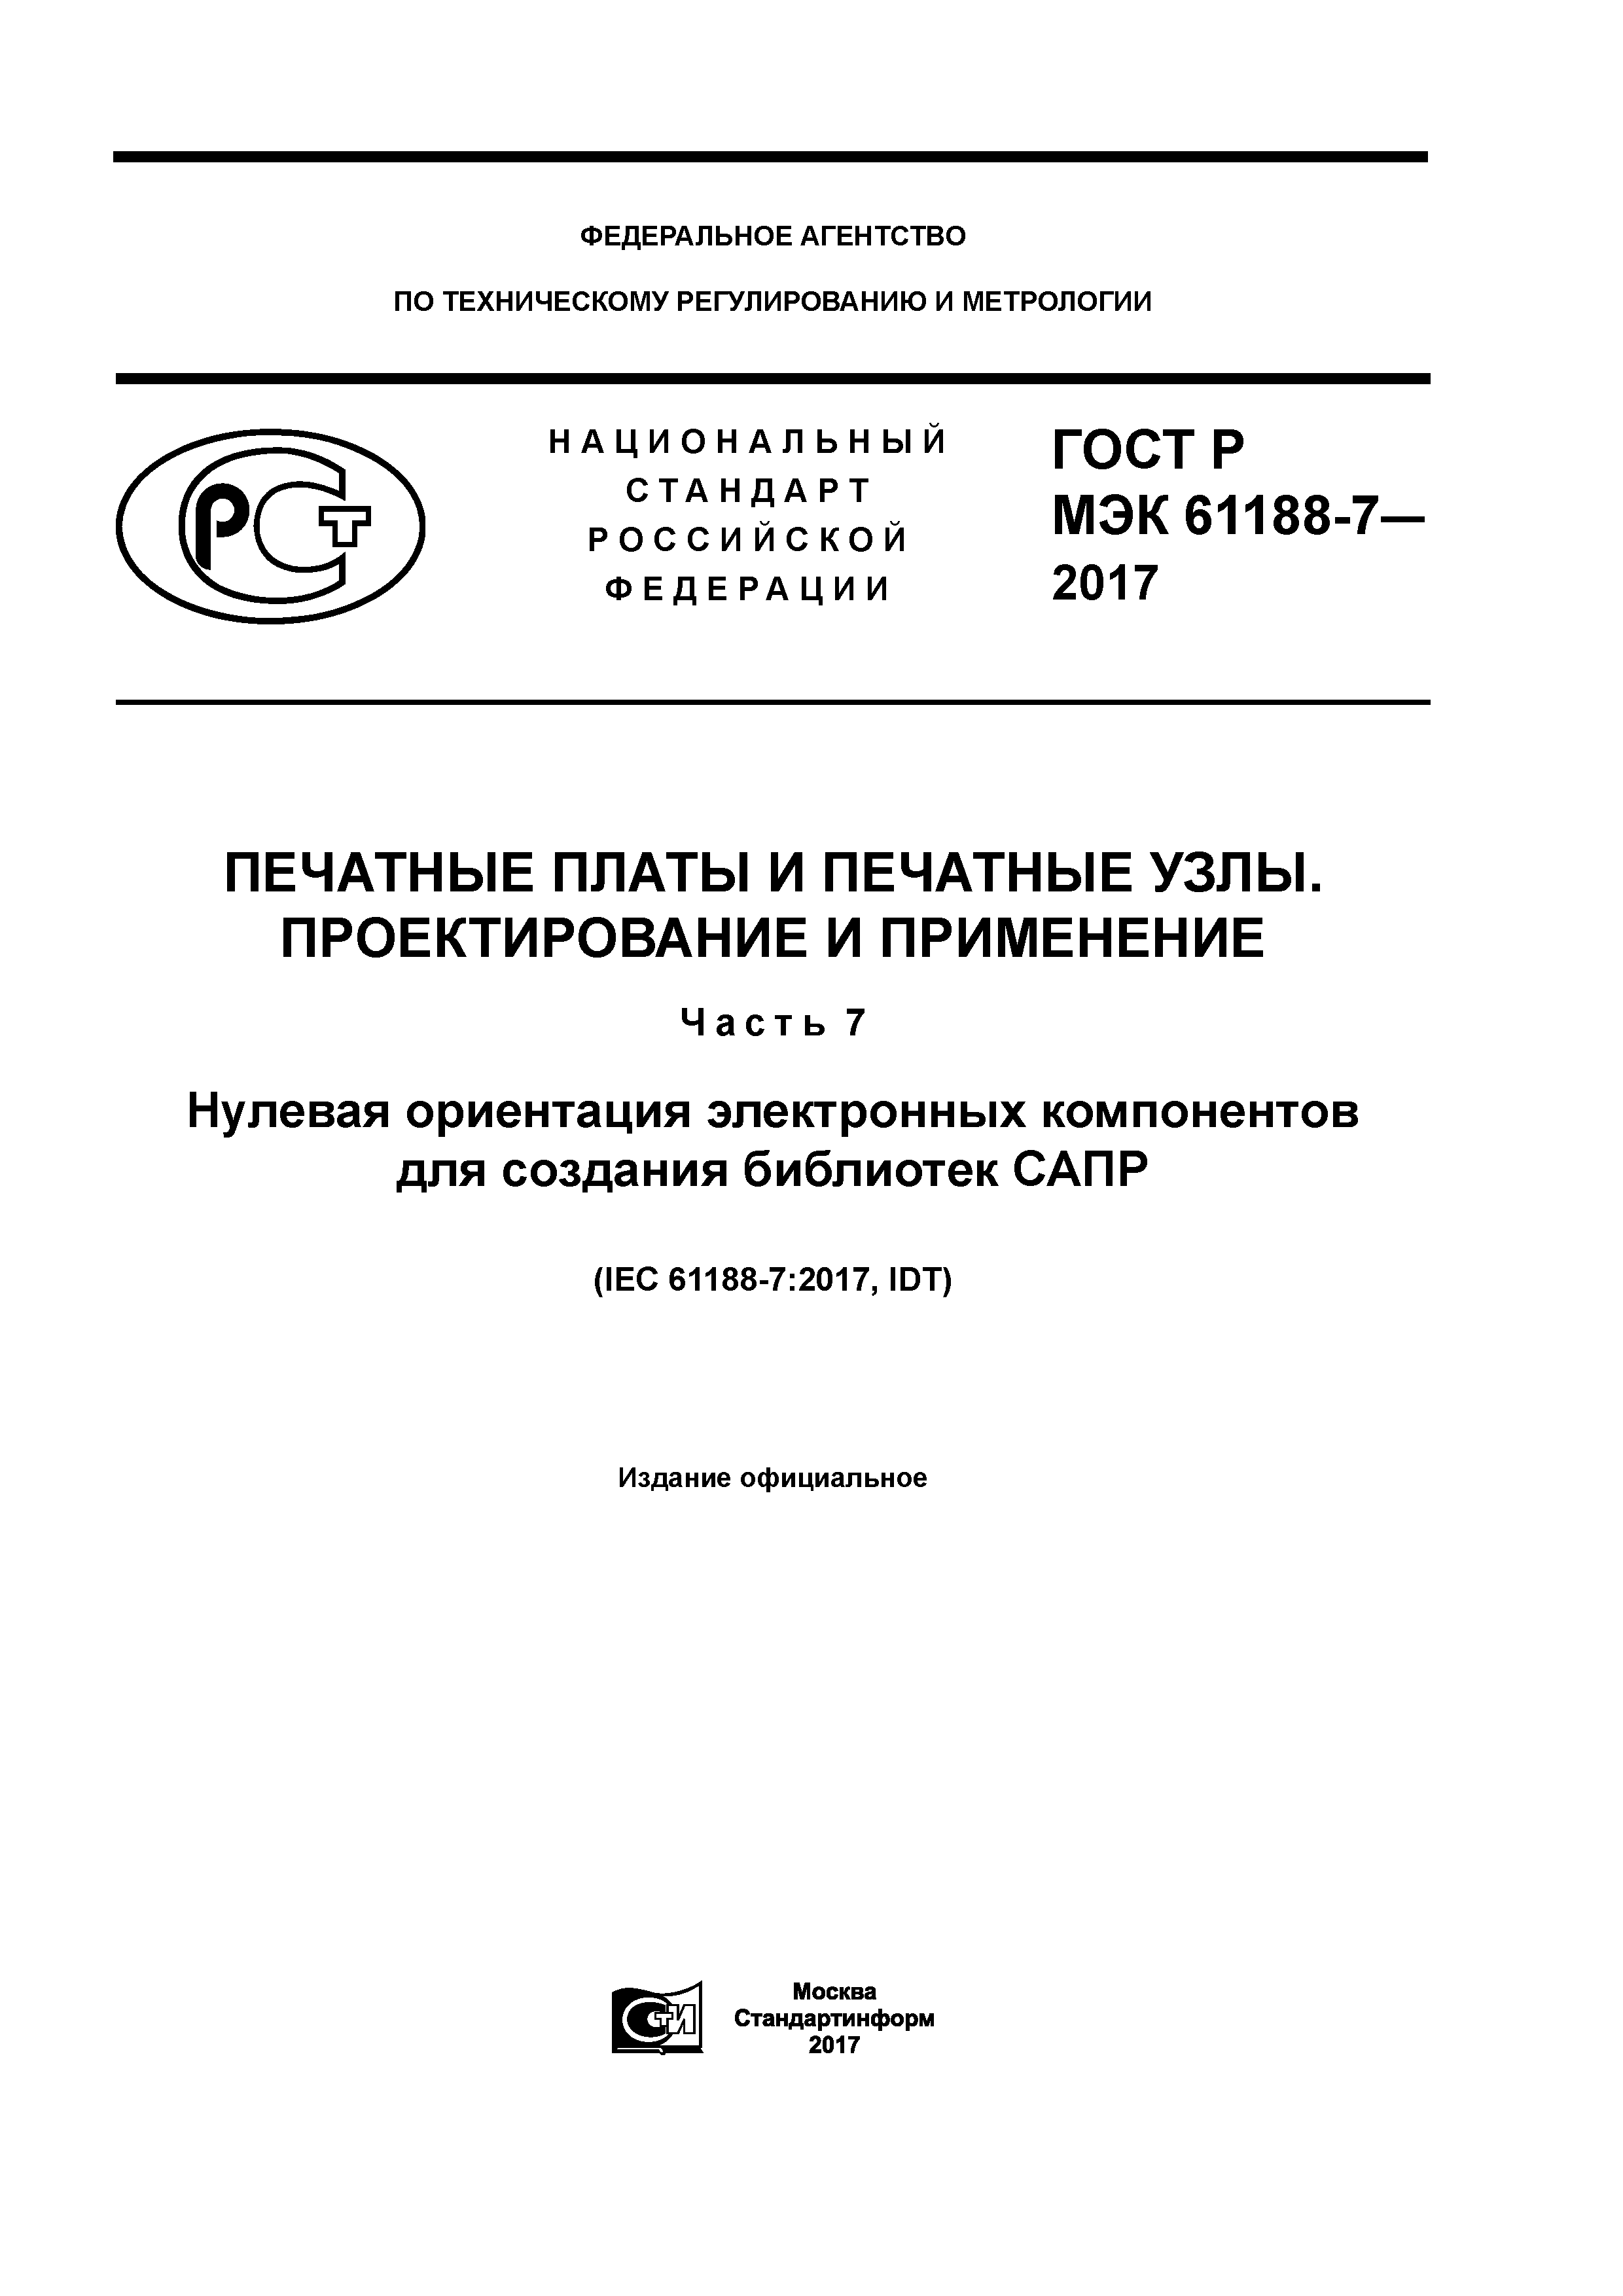 ГОСТ Р МЭК 61188-7-2017